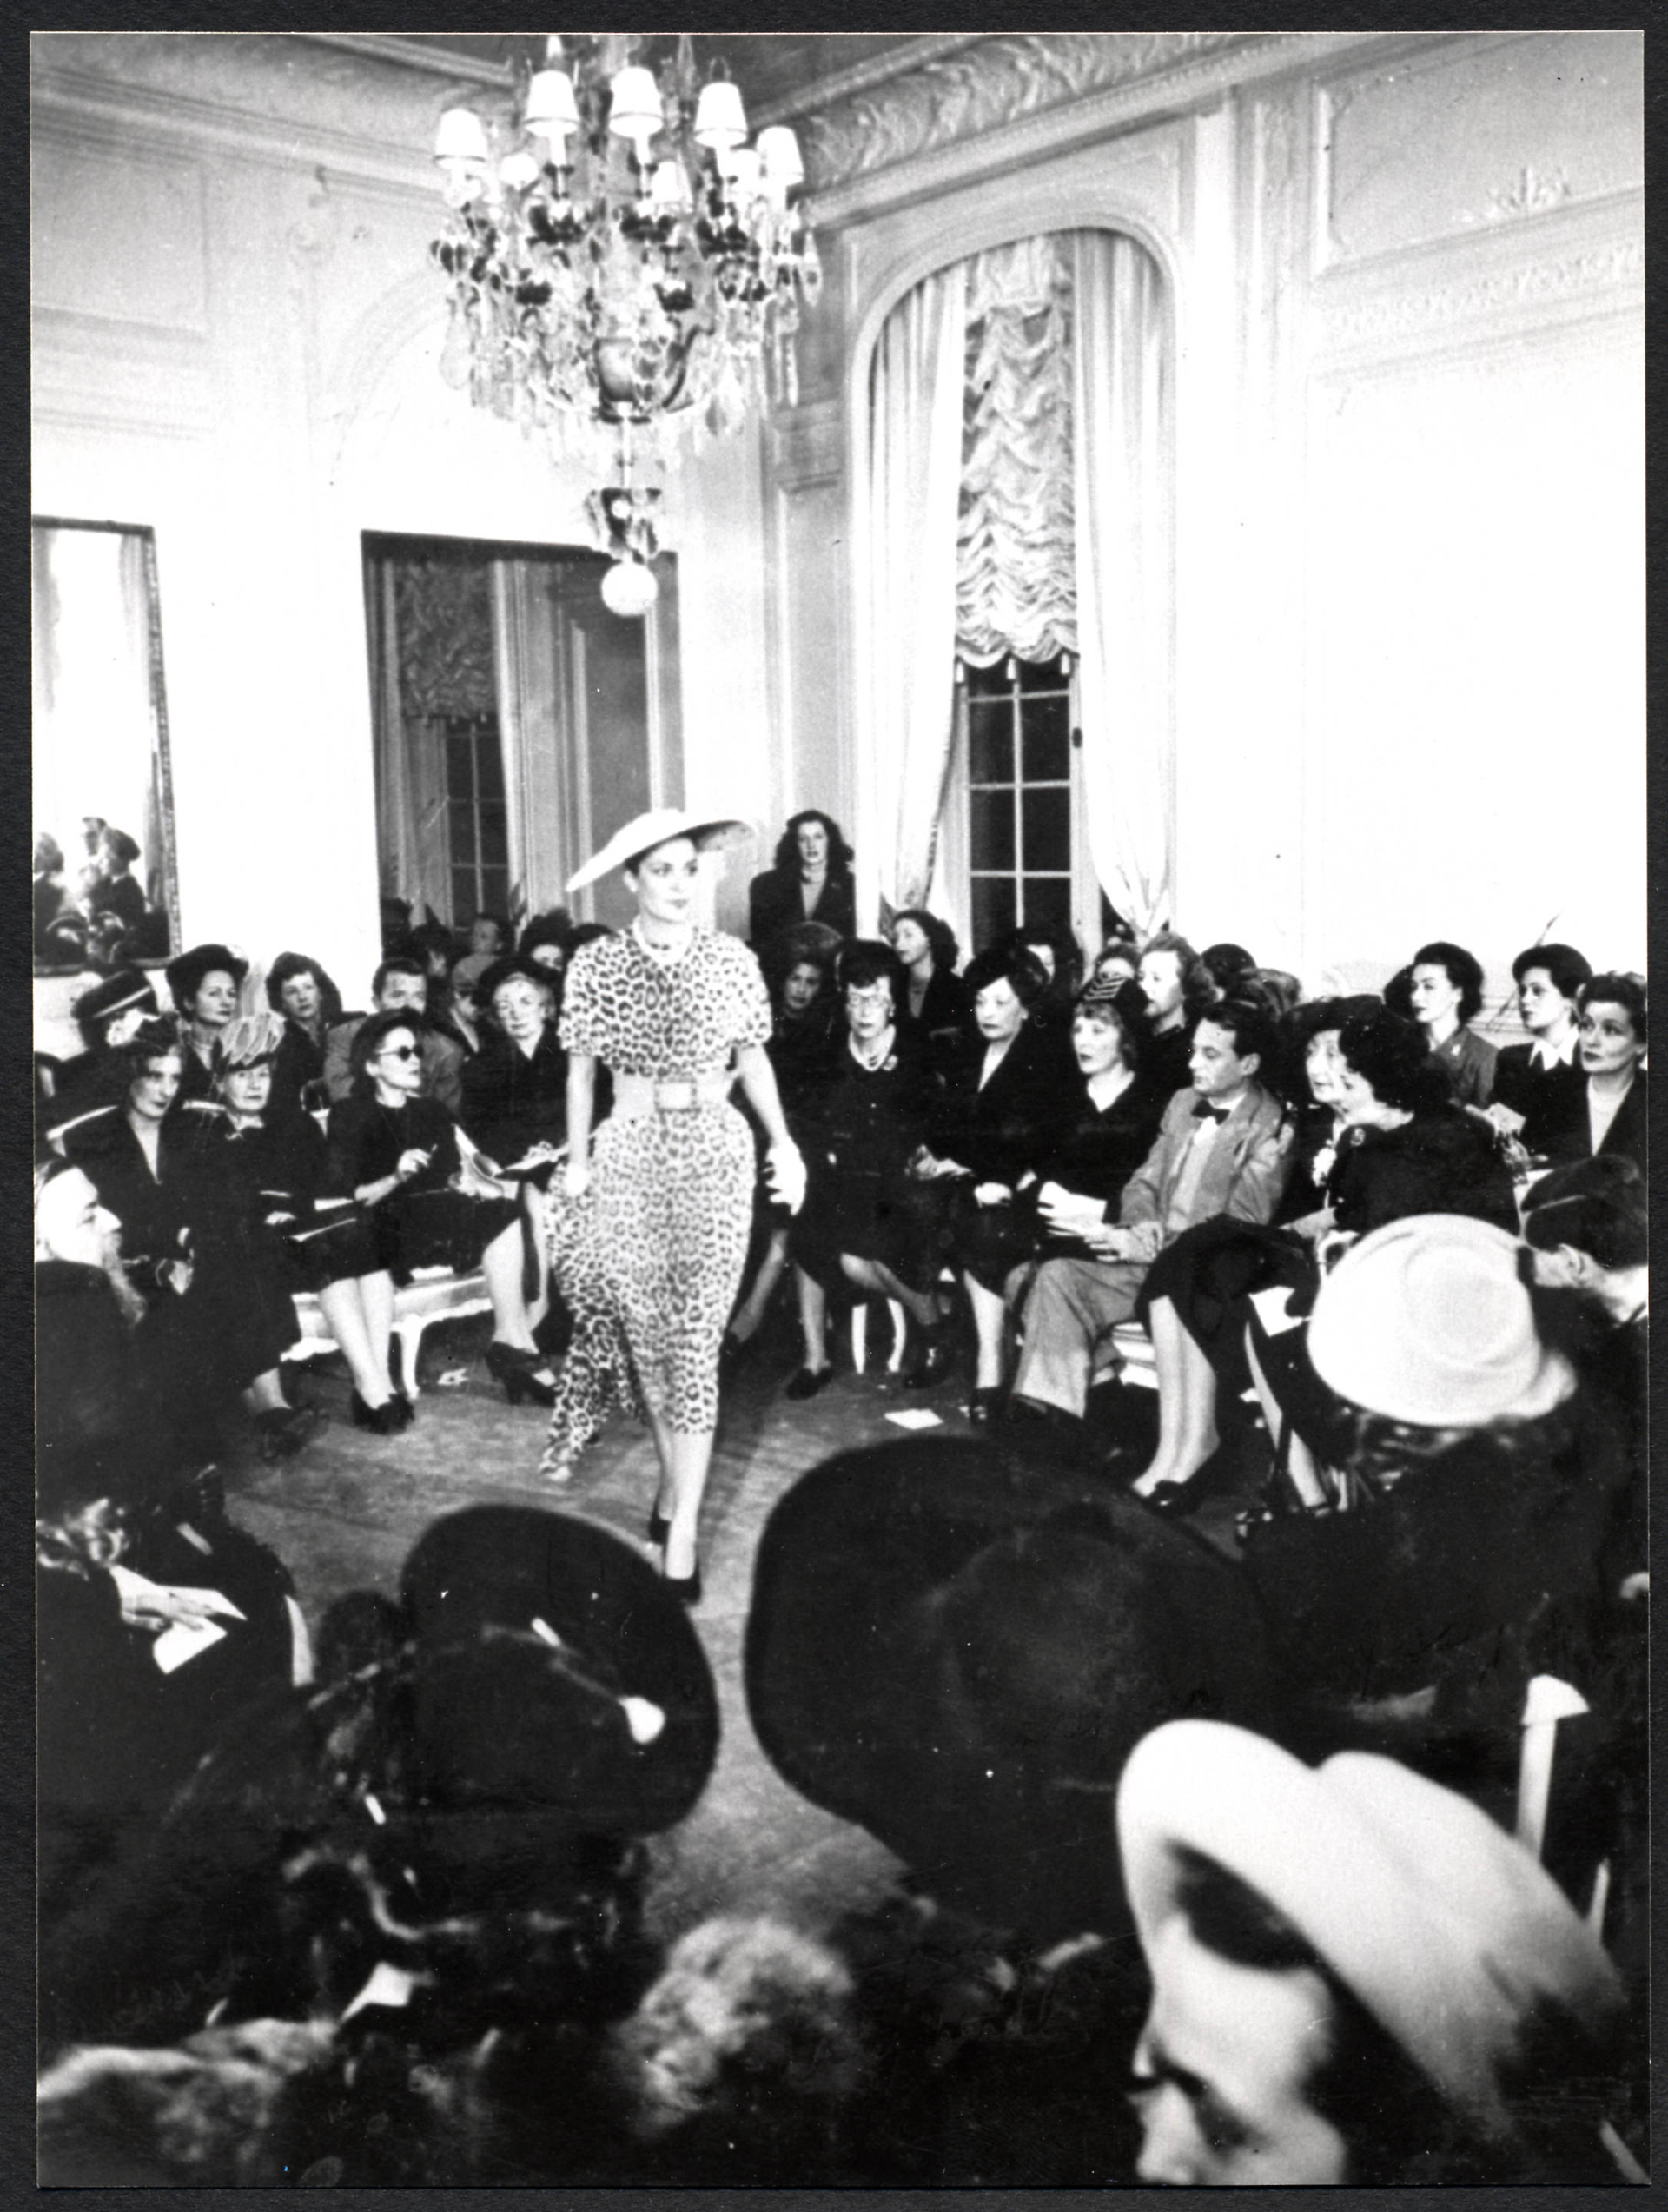 Костюм, украшенный принтом &laquo;Jungle&raquo;, показ Christian Dior 1947 год